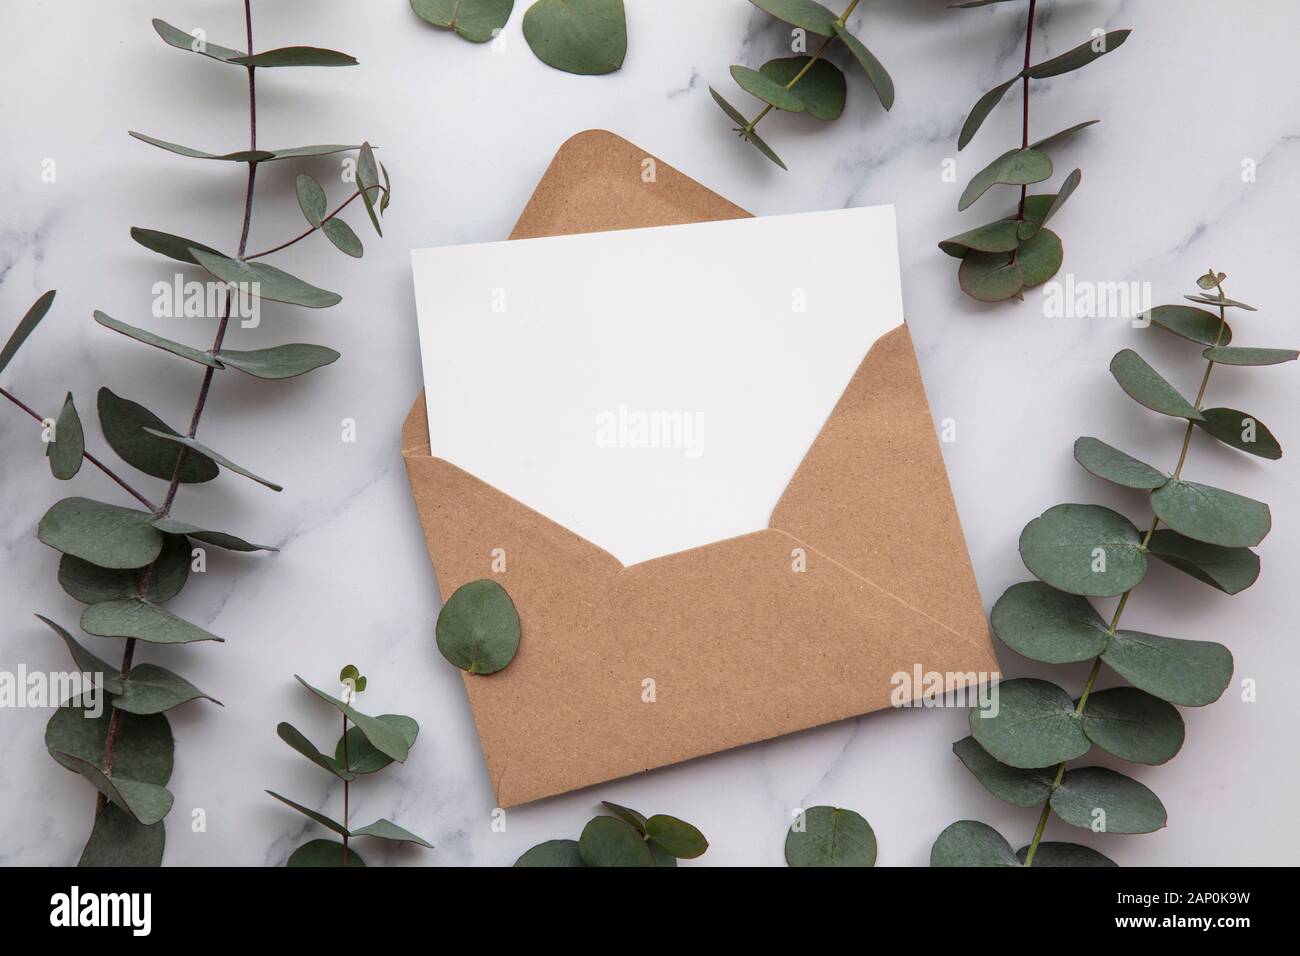 Enveloppes En Papier Vierge, Lettres D'invitation Avec Des Feuilles D' eucalyptus Et Des Fleurs De Coton